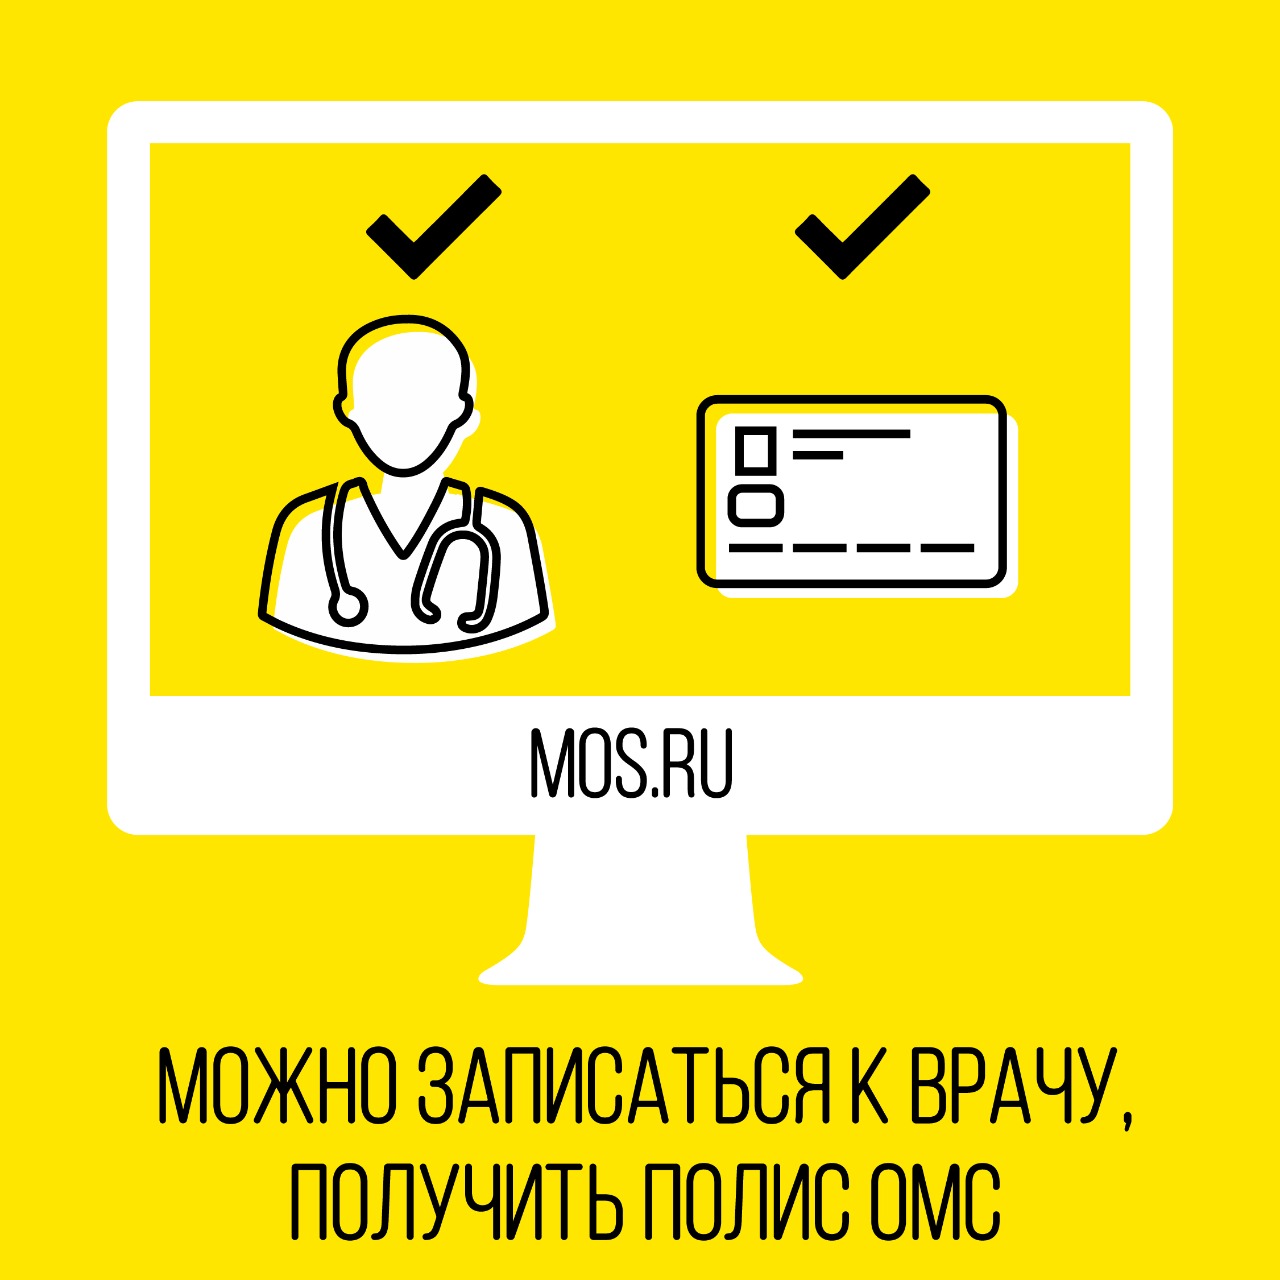 Москвичи смогут записаться к врачу через портал mos.ru